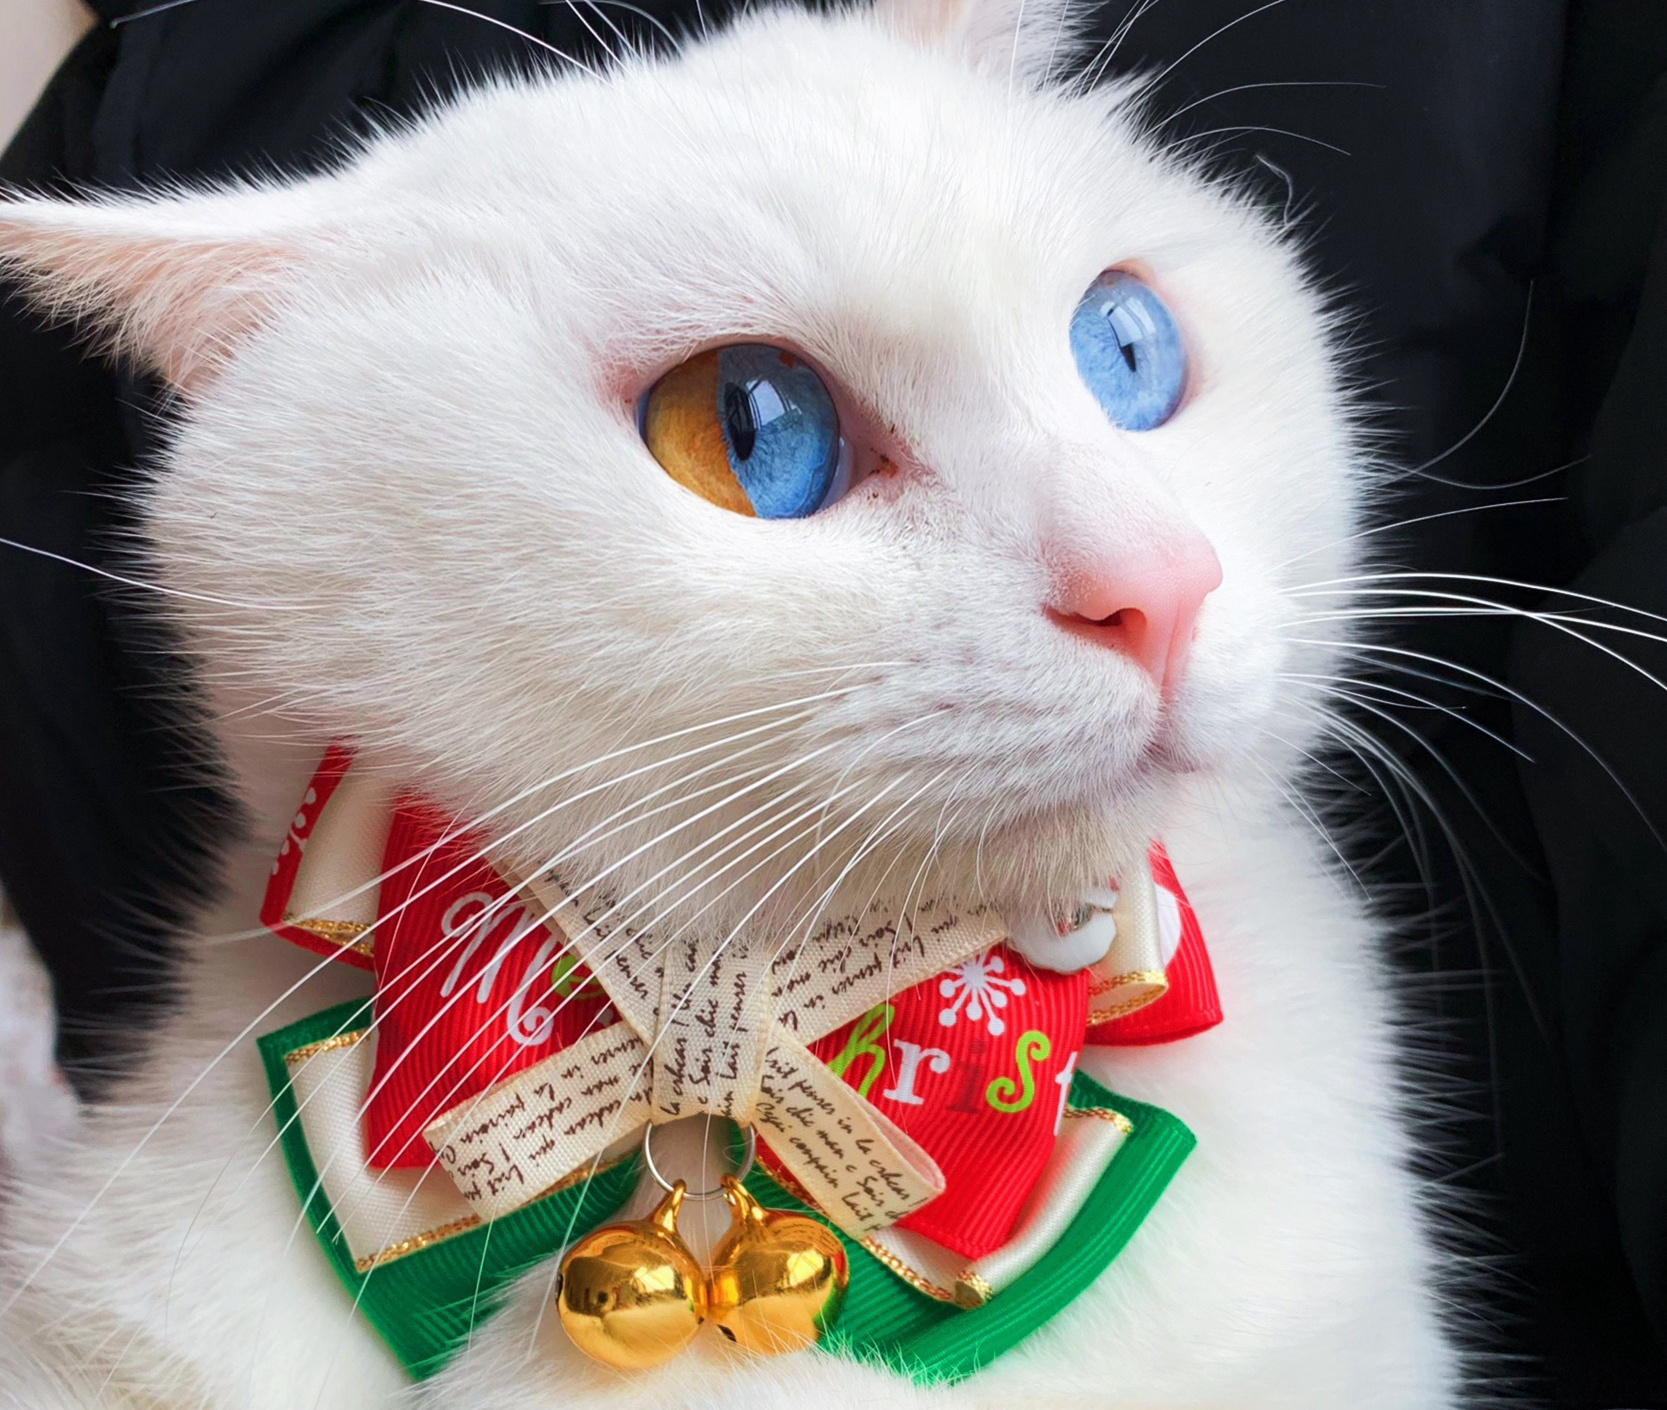 猫咪是个神奇的动物,每个猫咪的眼睛都是不一样的颜色